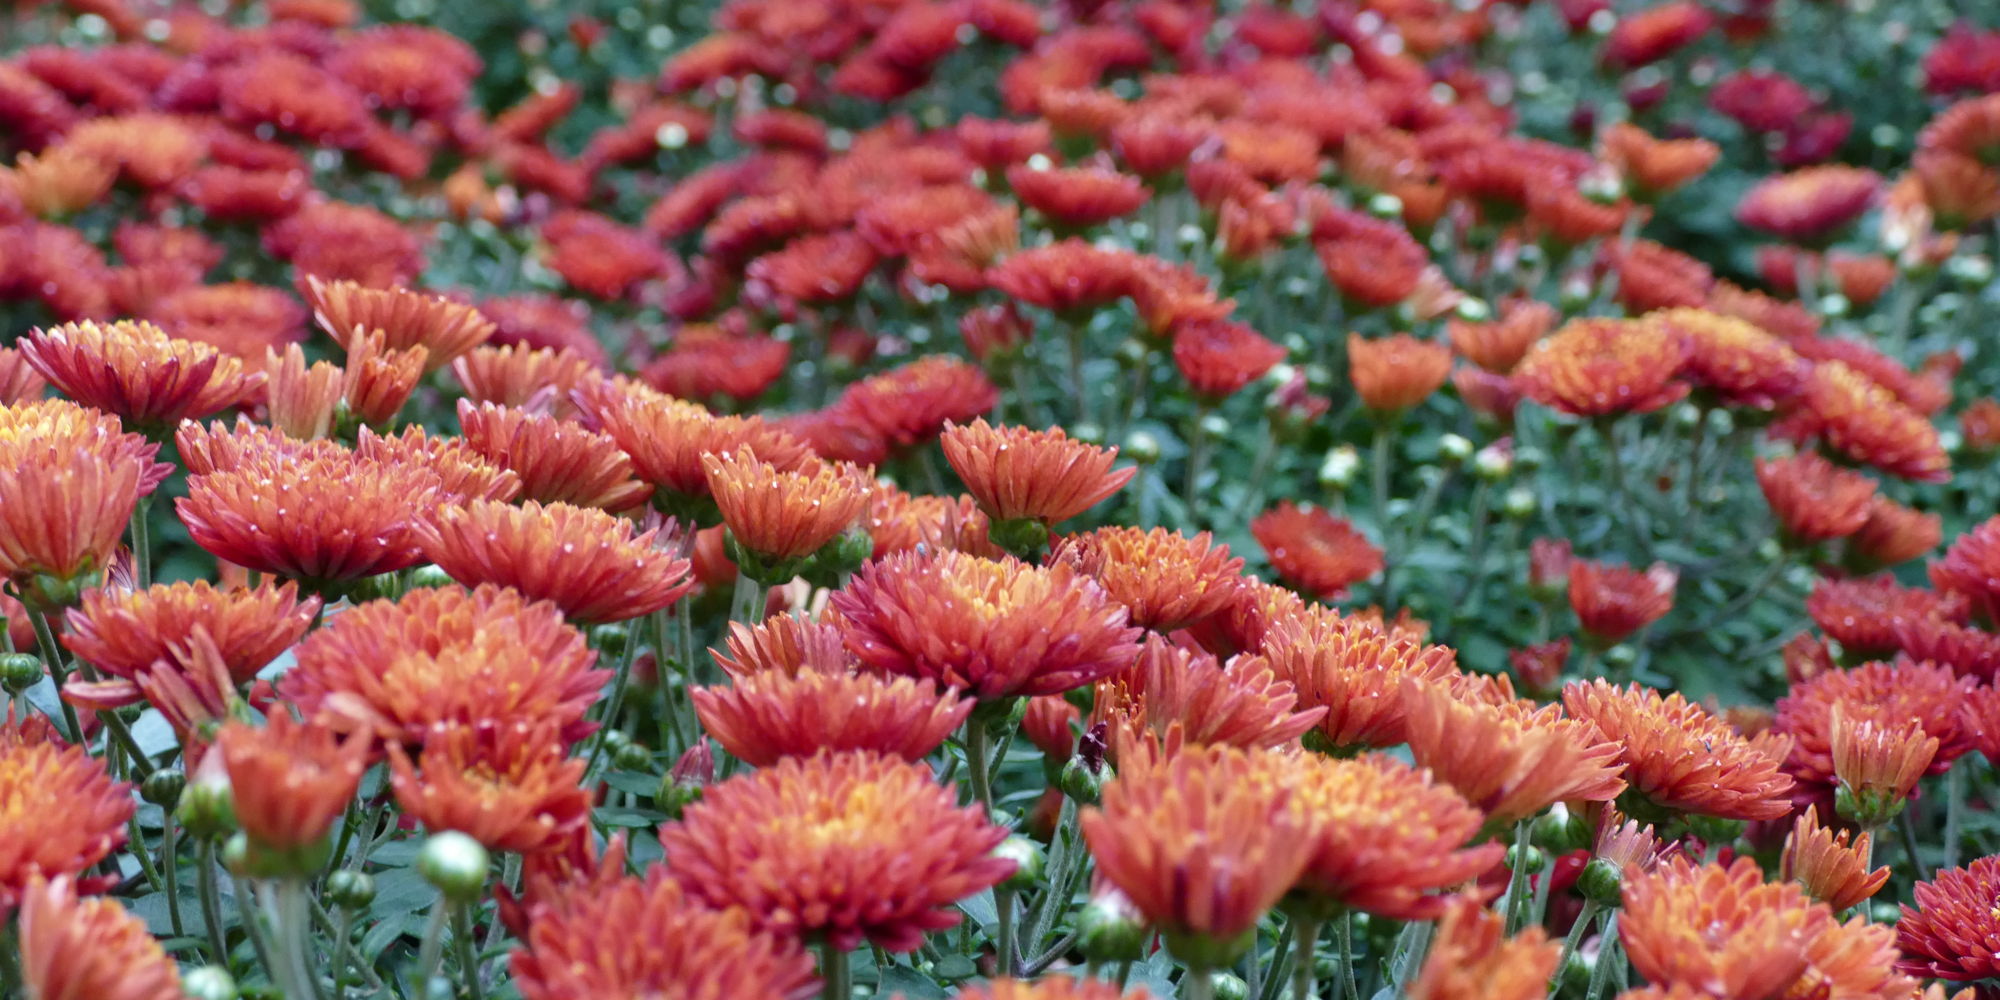 Fall Chrysanthemum Display promotional image